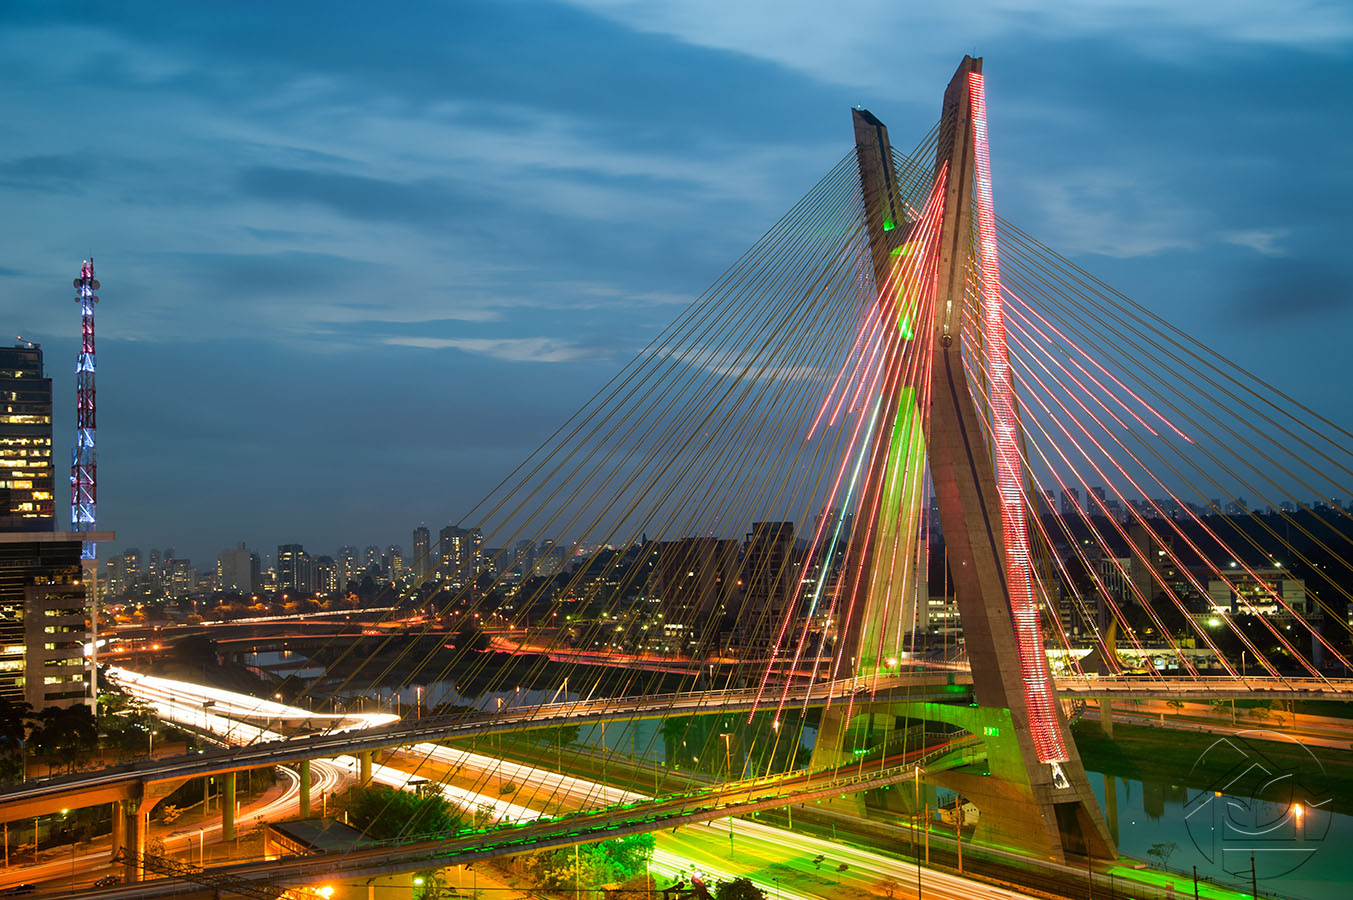 Бразильский мост в Сан-Паулу в вечерних огнях